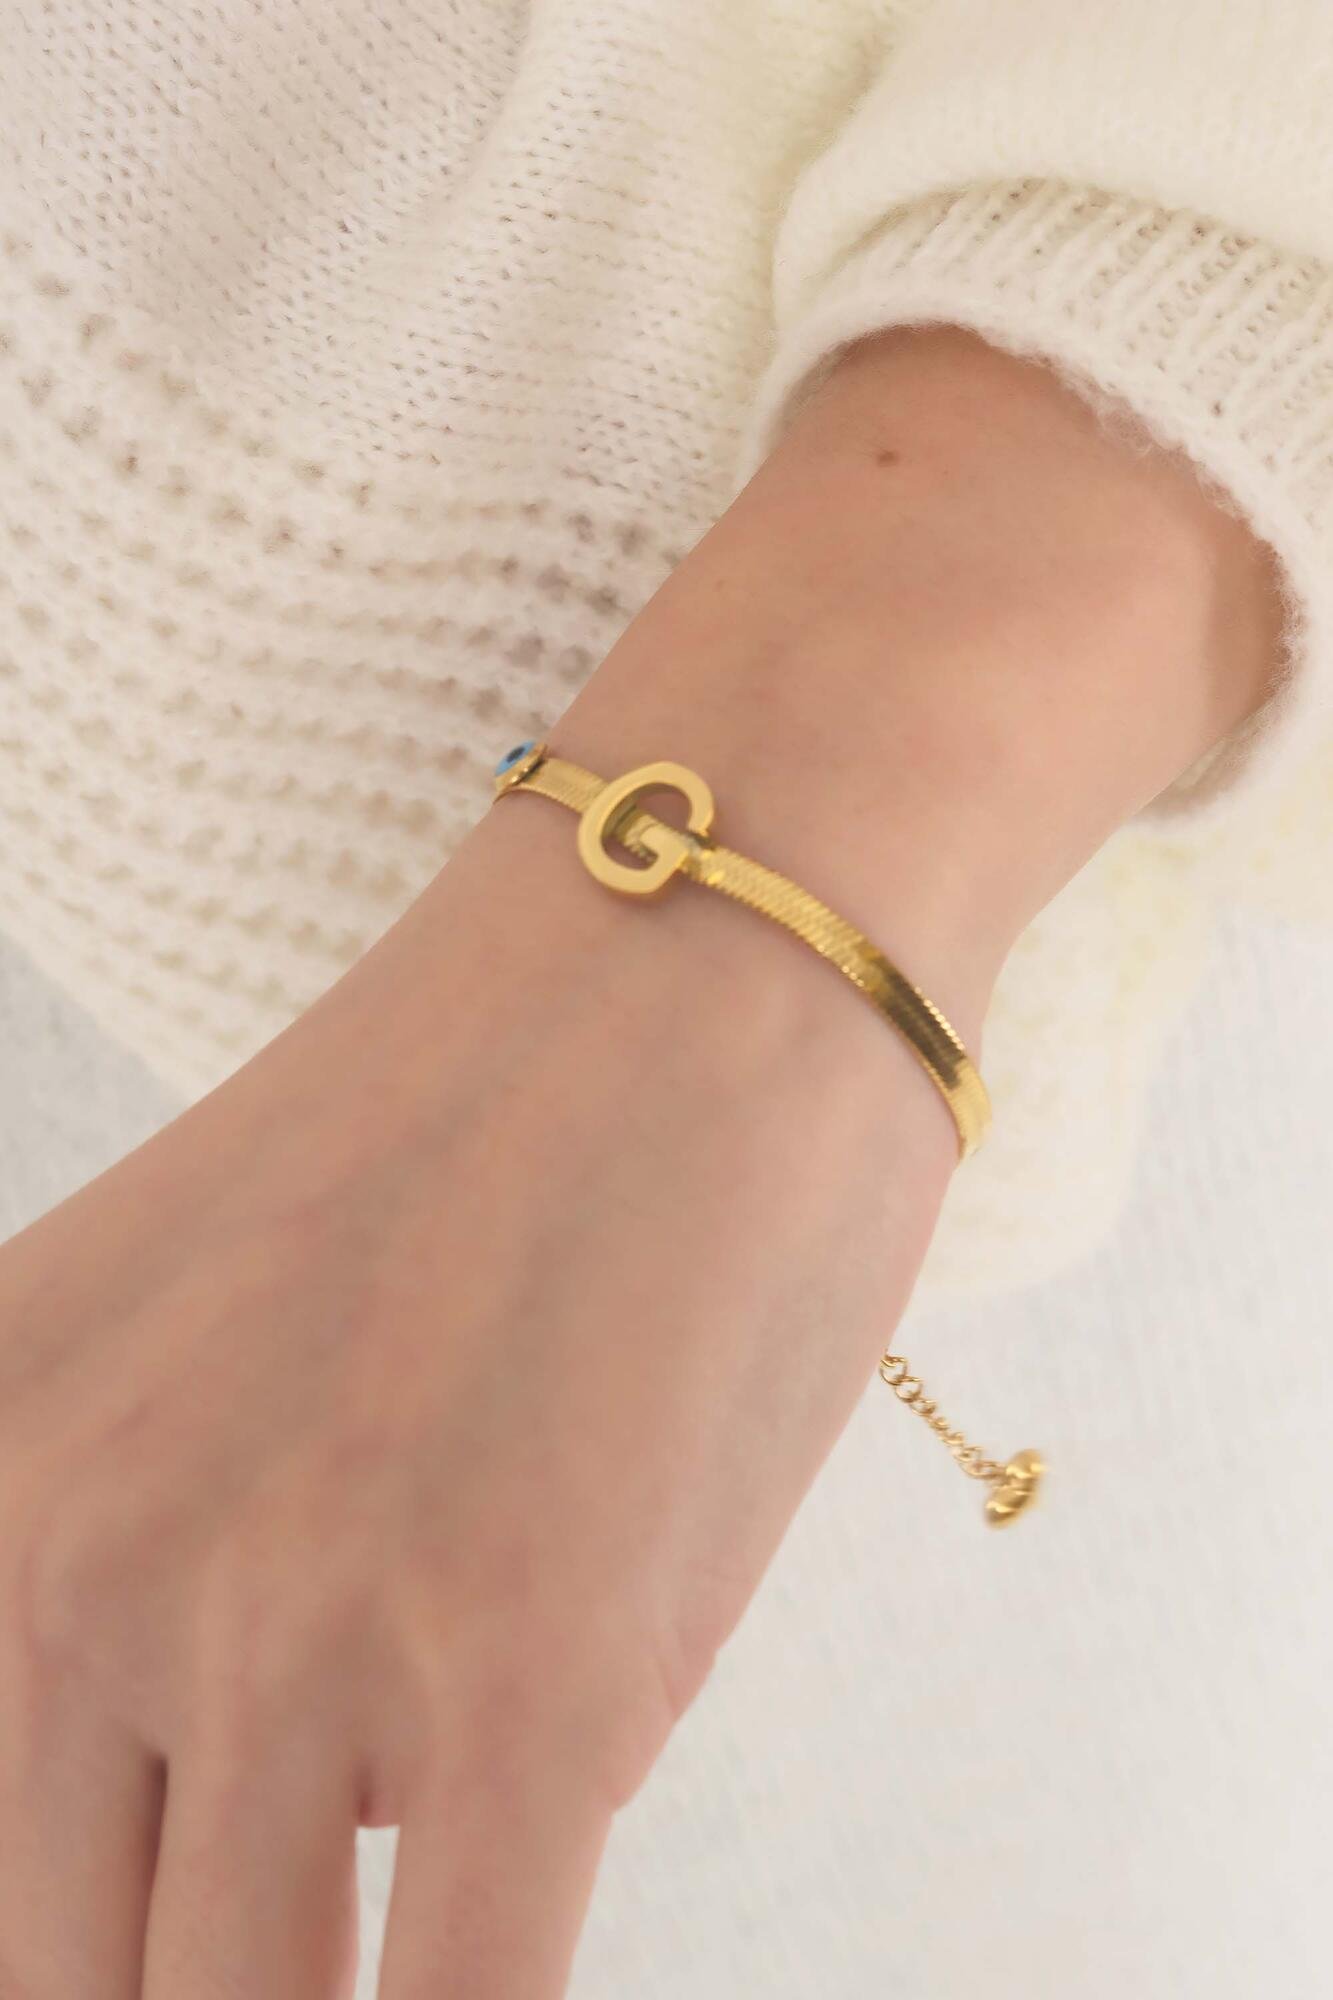 Golar Beads with G Letter Beads Detailed Gold Bracelet